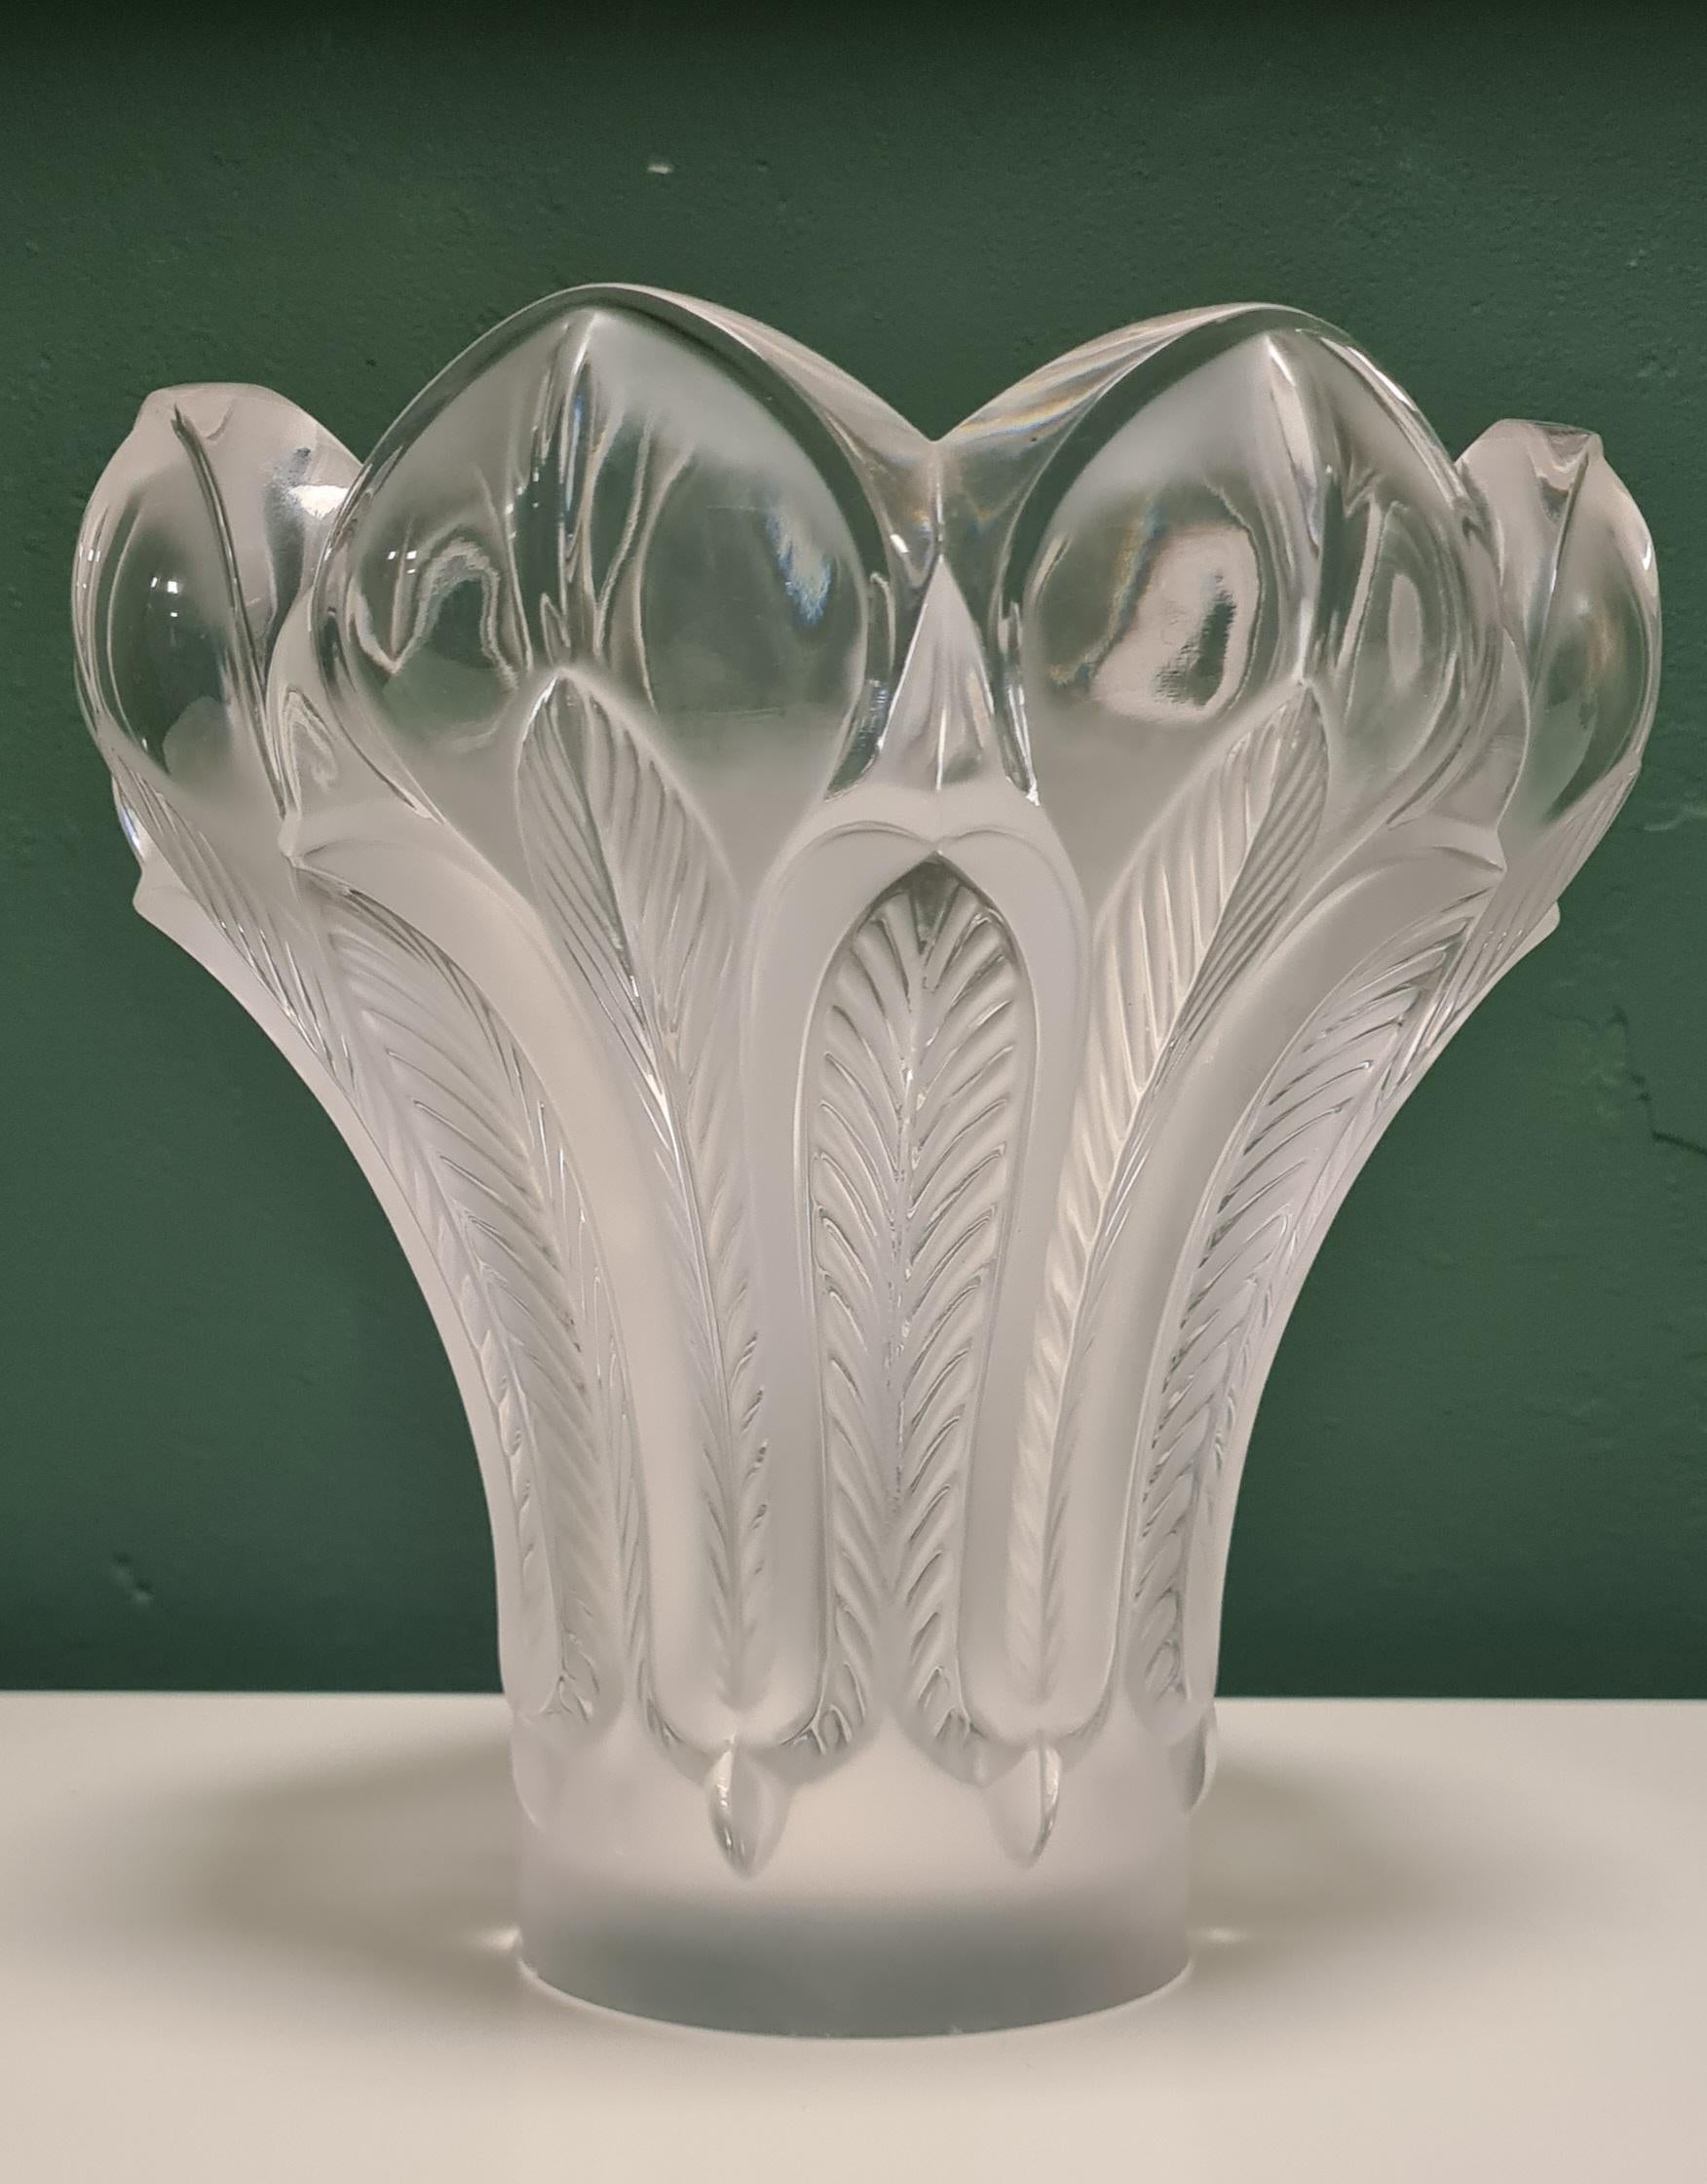 Vase créé par la verrerie Lalique.

Réalisé en 1985 pour commémorer le 125ème anniversaire de la naissance de Rène Lalique.

Il présente des parties transparentes alternant avec des plumes stylisées et satinées qui donnent au vase la forme d'une